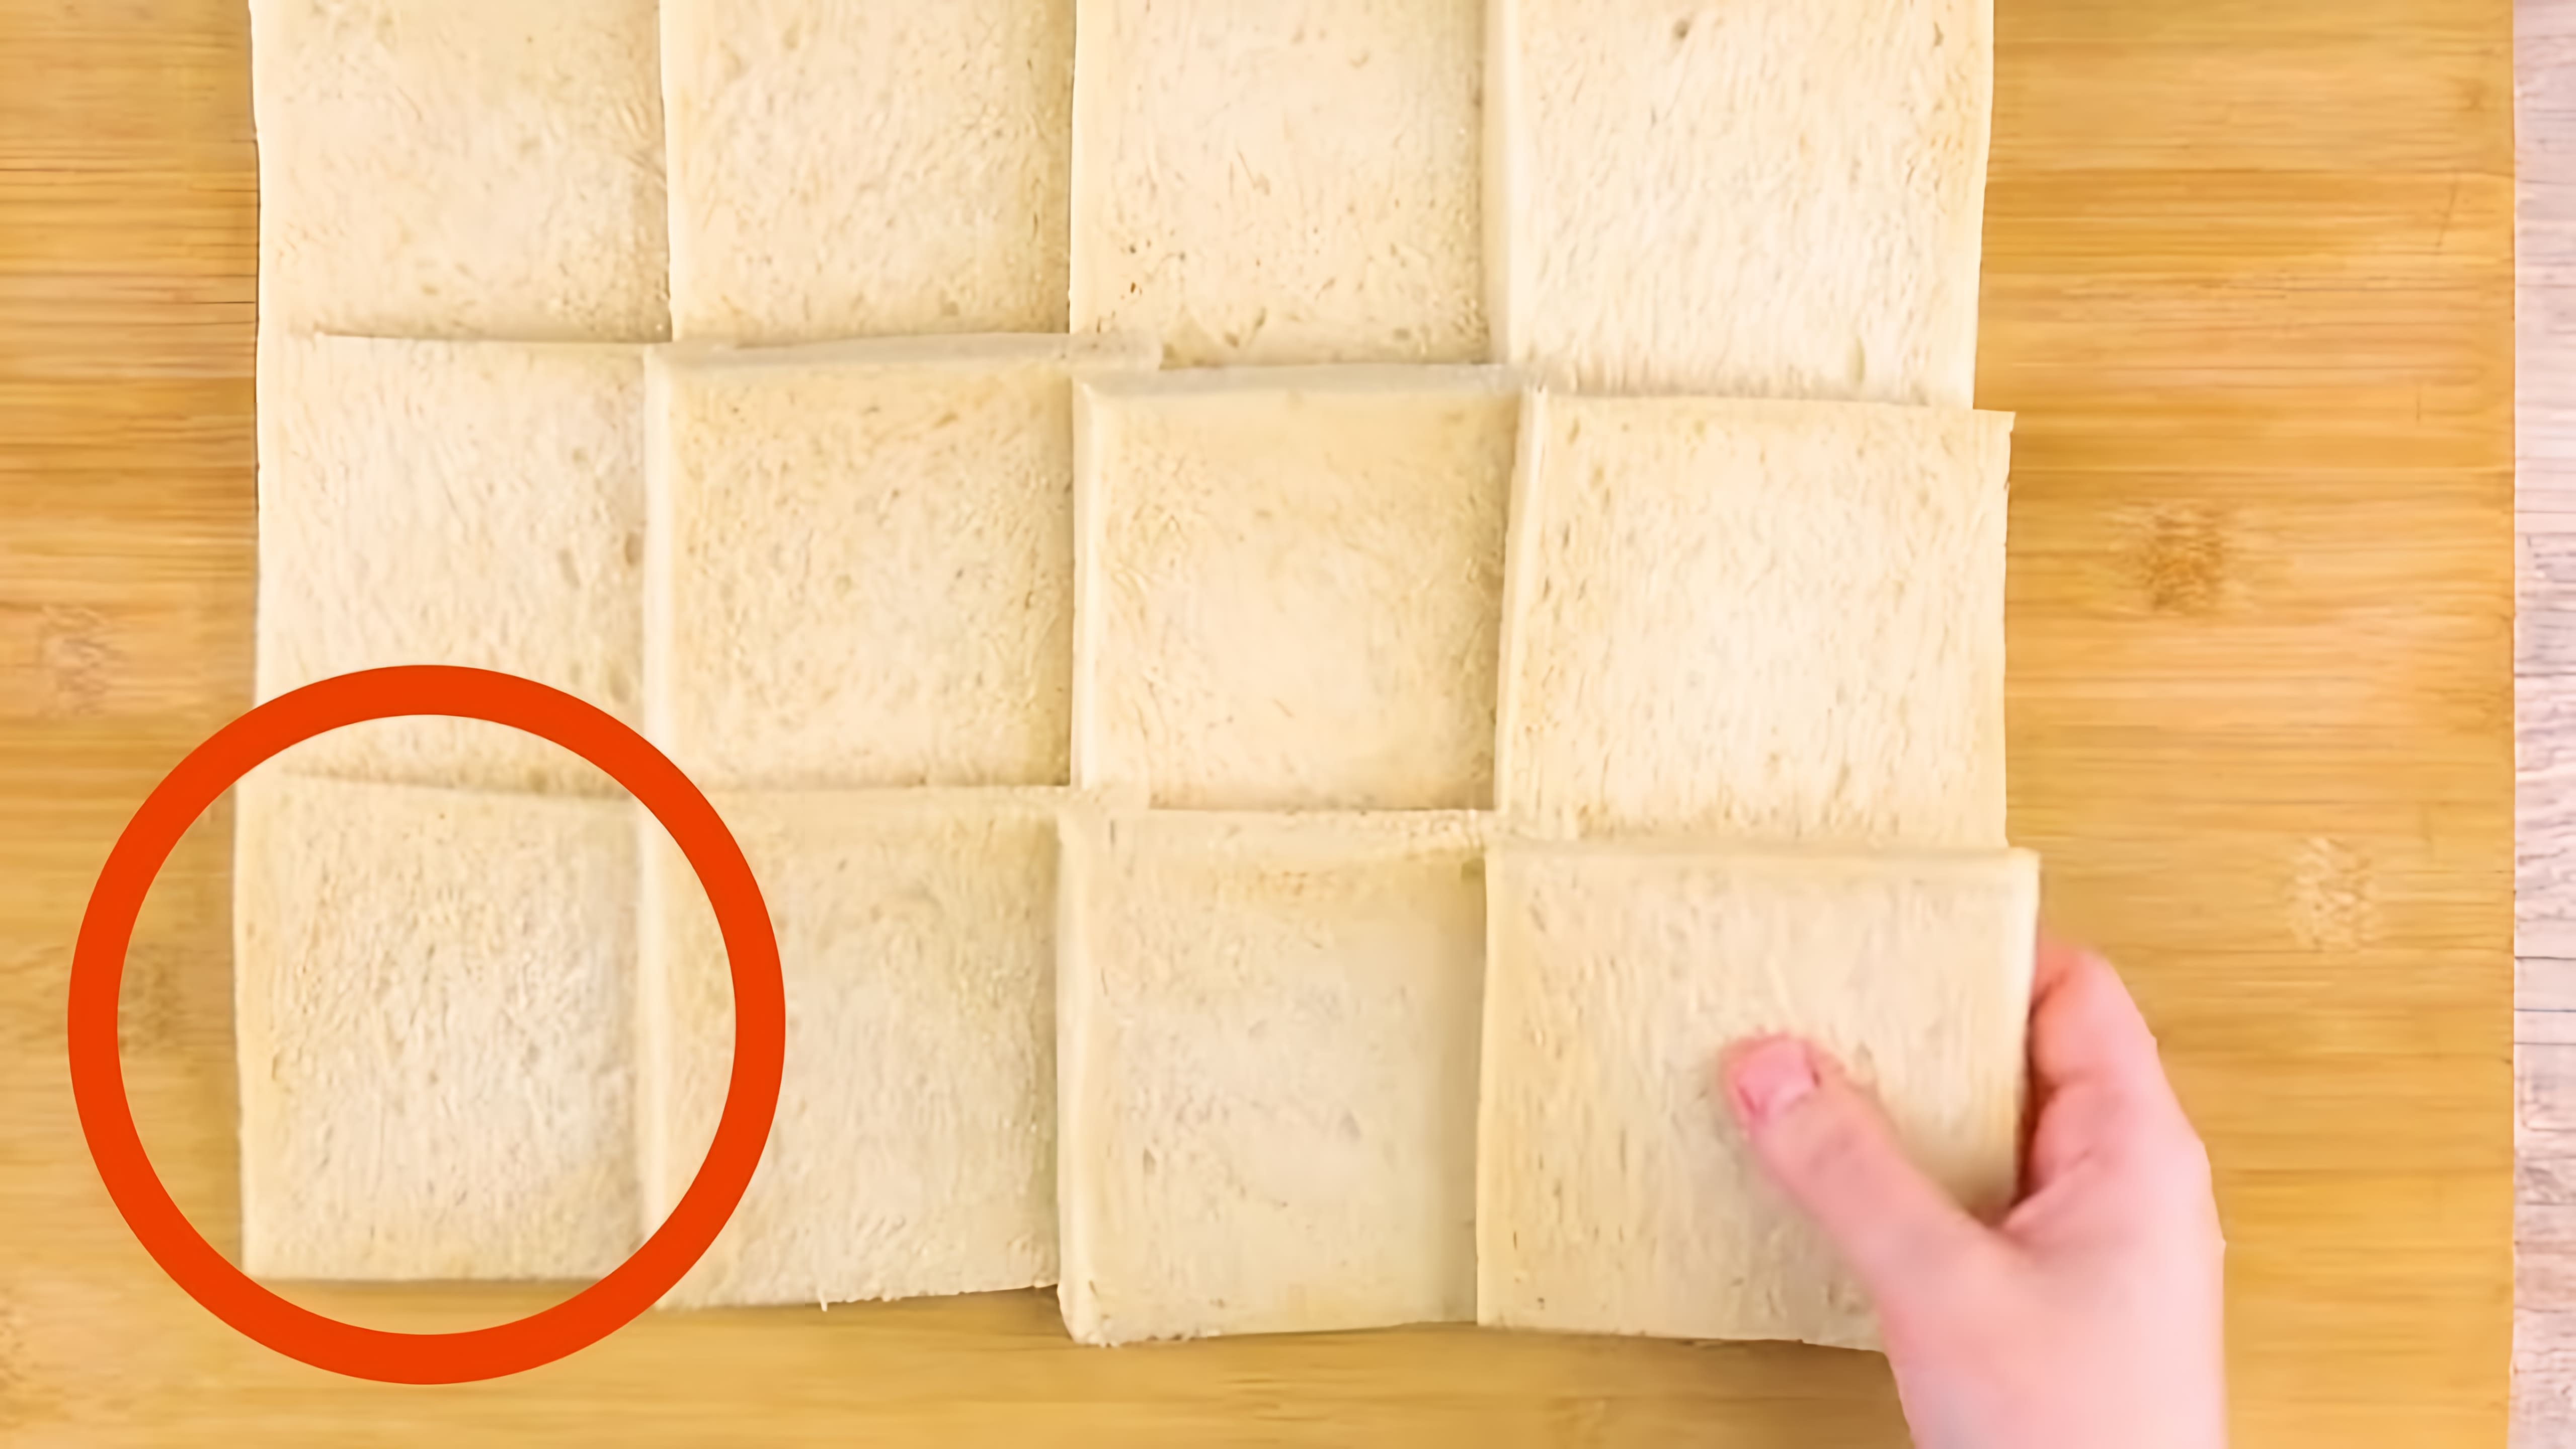 Видео: Раскатываем 12 ломтиков хлеба скалкой. Результат — пальчики оближешь!